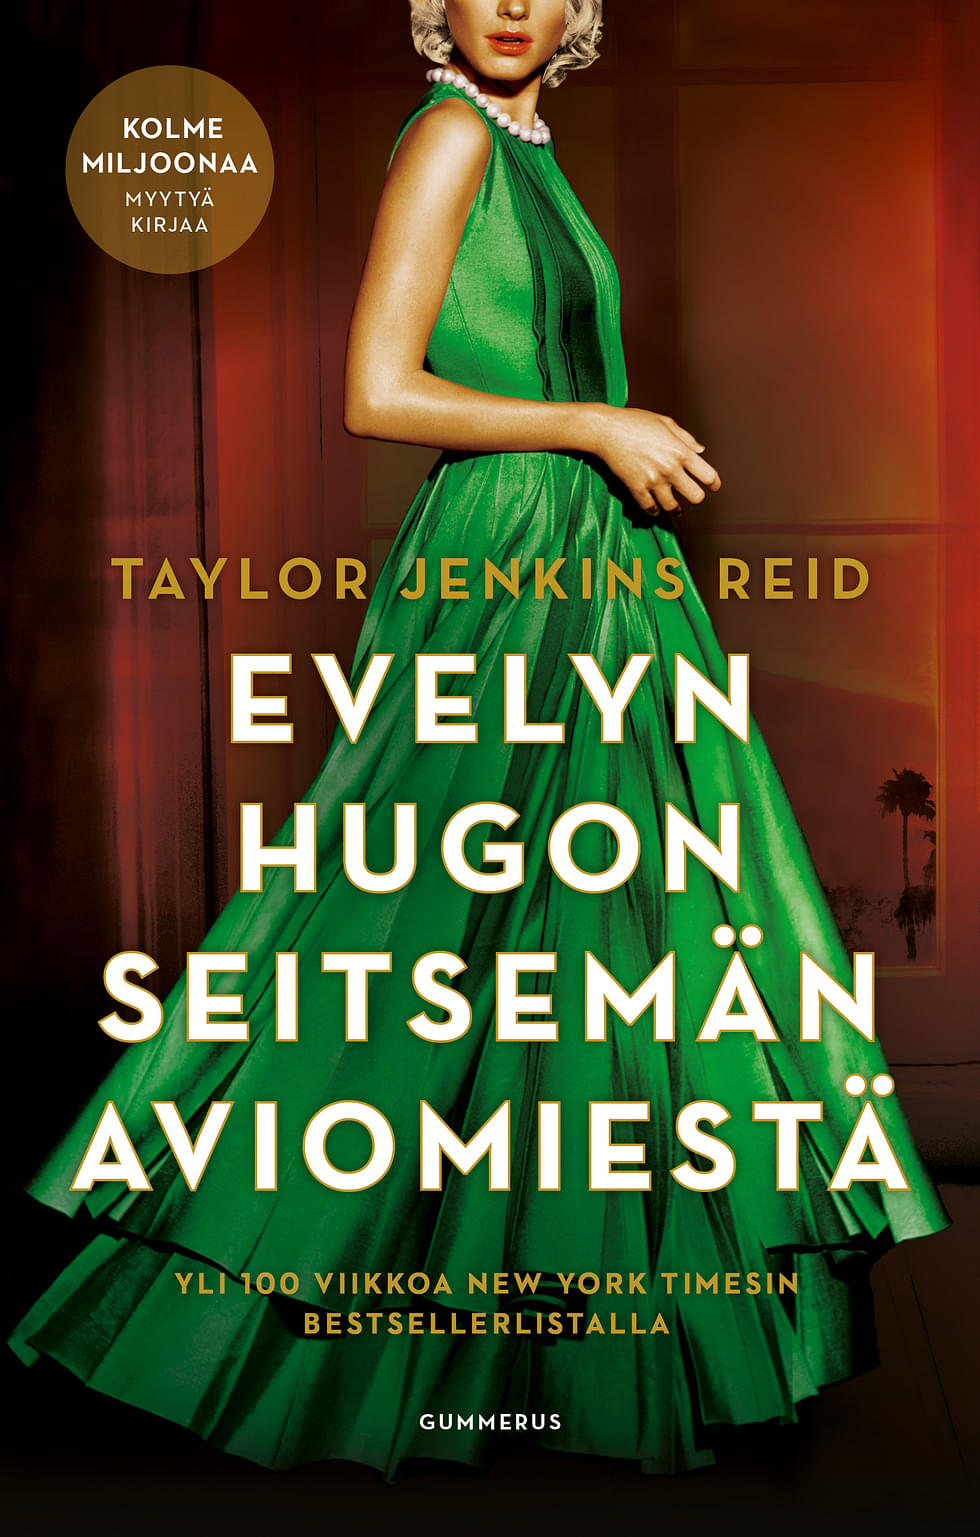 Evelyn Hugon seitsemän aviomiestä on ollut suosittu teos.